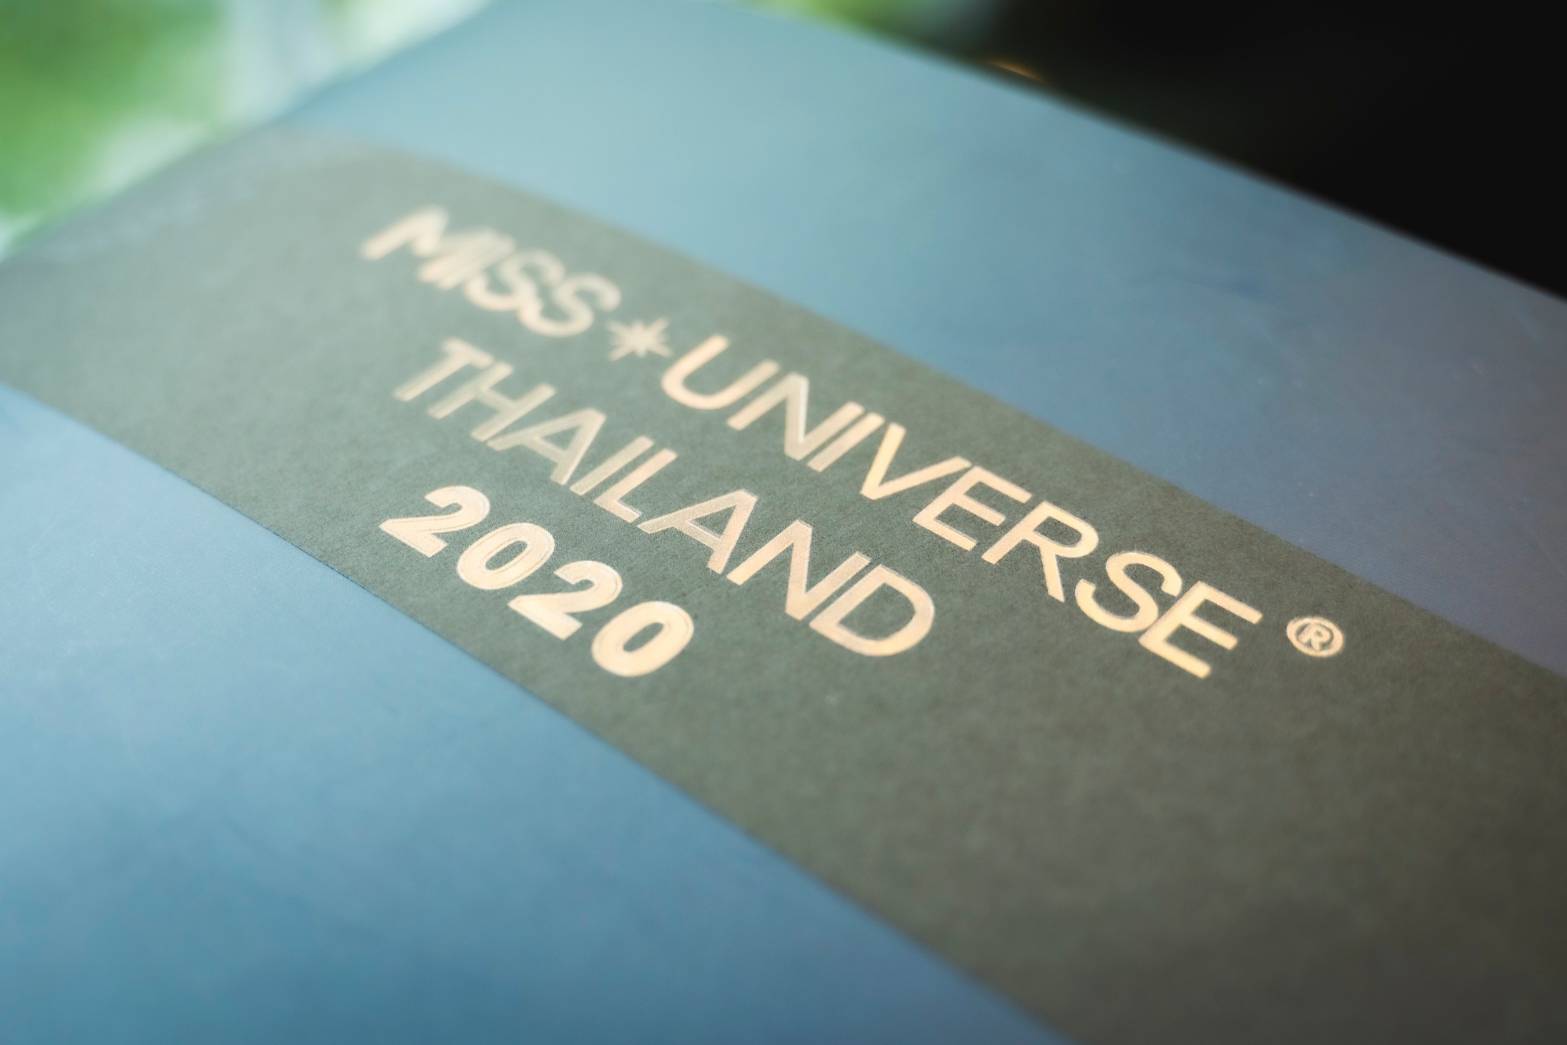 มิสยูนิเวิร์สไทยแลนด์ 2020 คัดเข้มใบสมัคร เฟ้นหาสาวงามตัวจริงแห่งจักรวาล